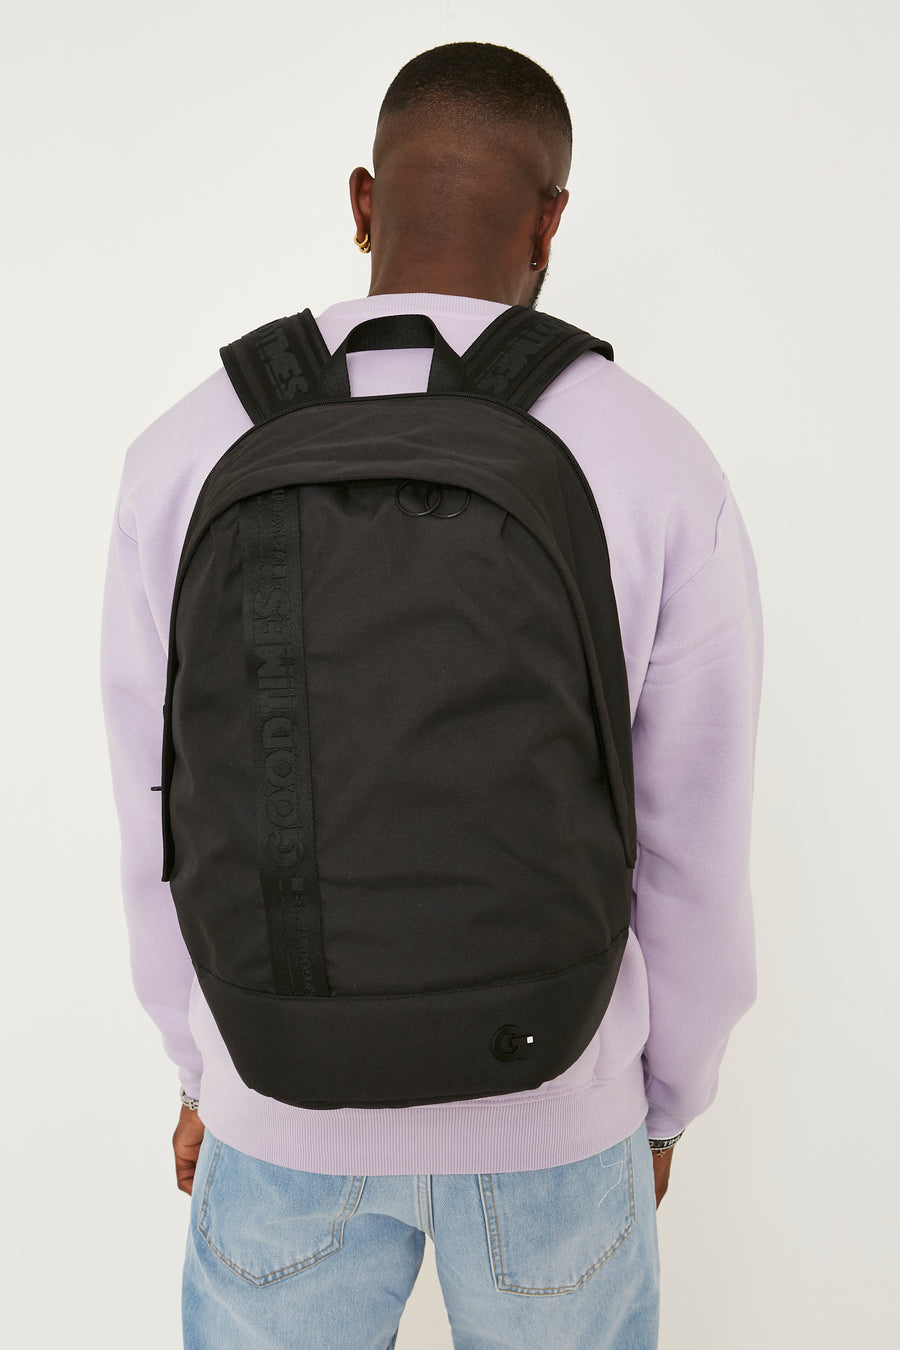 Wunstorf Backpack - Stealth Black